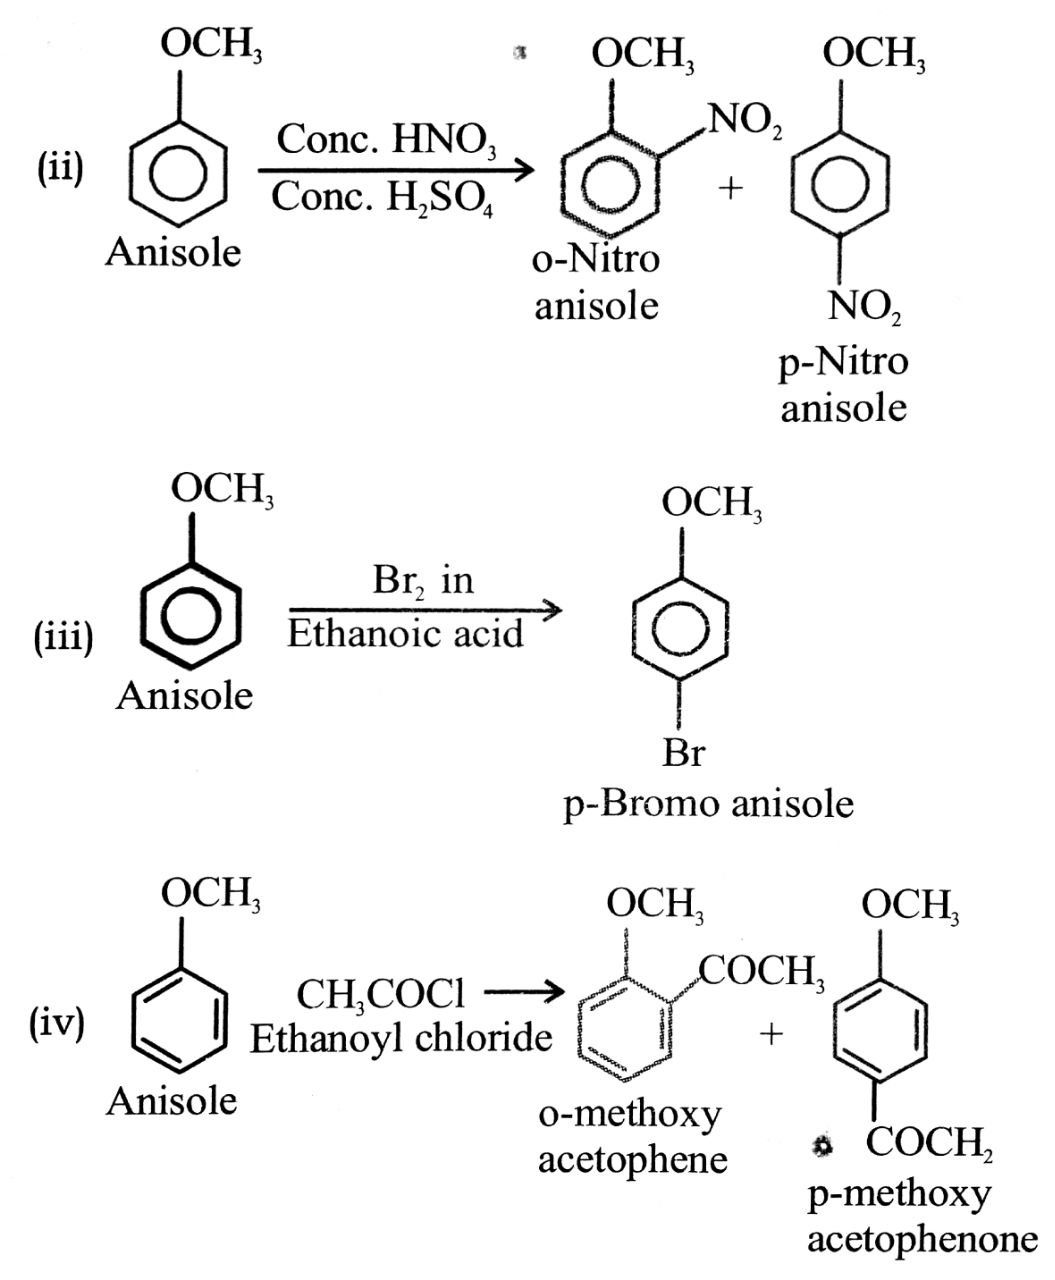 Explain phenol is more acidic than aliphatic